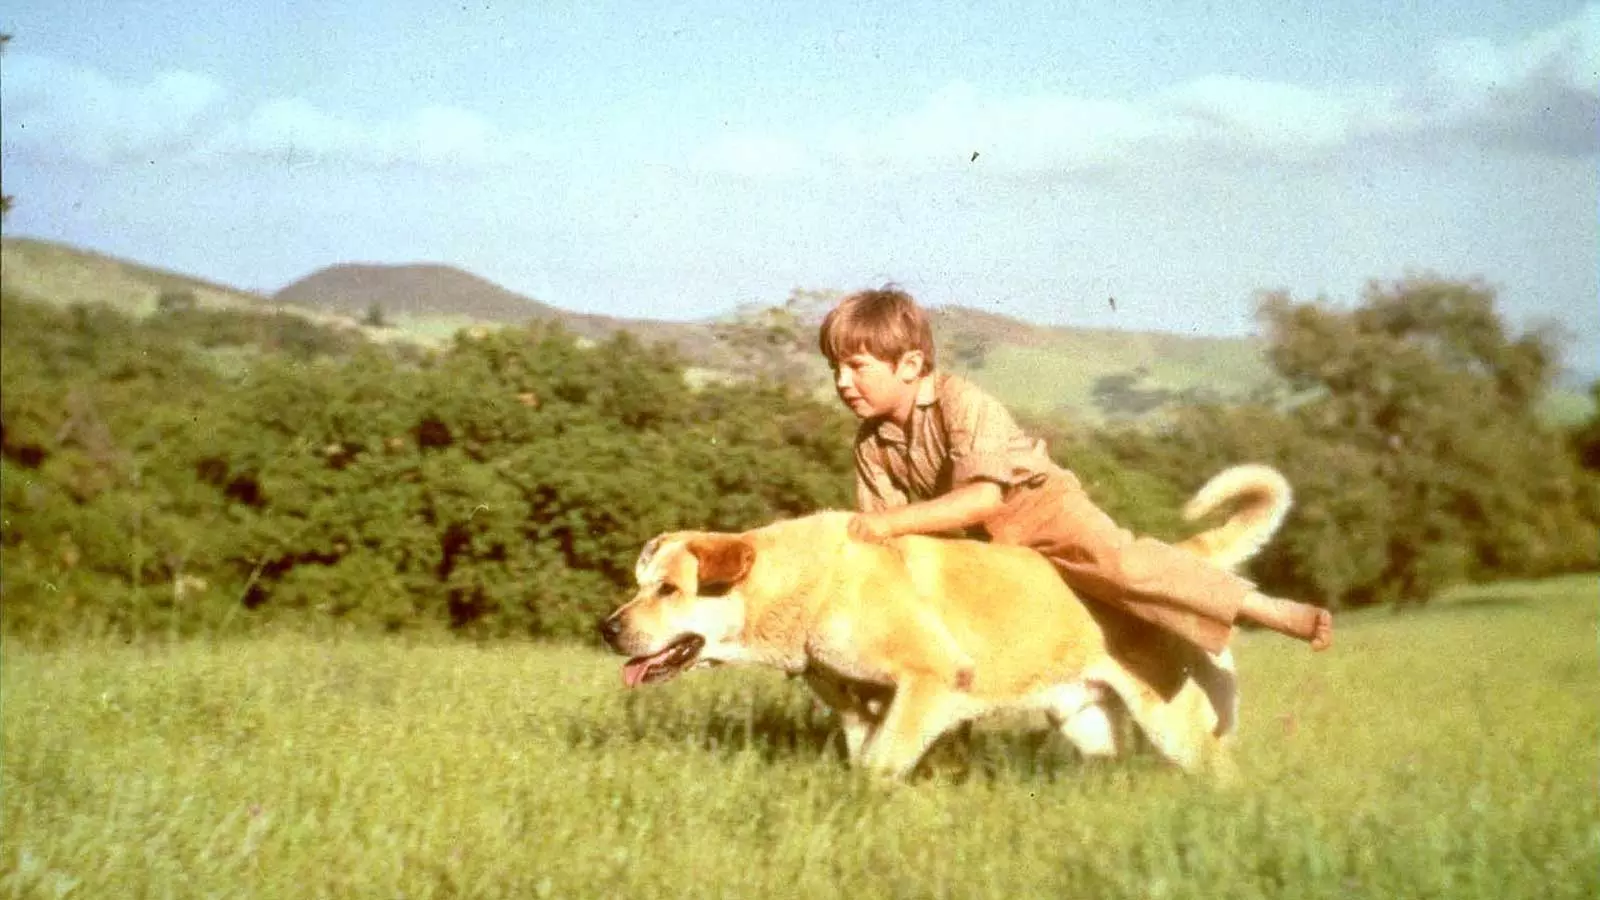 دوستی و همراهی پسربچه با سگ مهربان در فیلم Old Yeller، محصول سال ۱۹۵۷ شرکت والت دیزنی